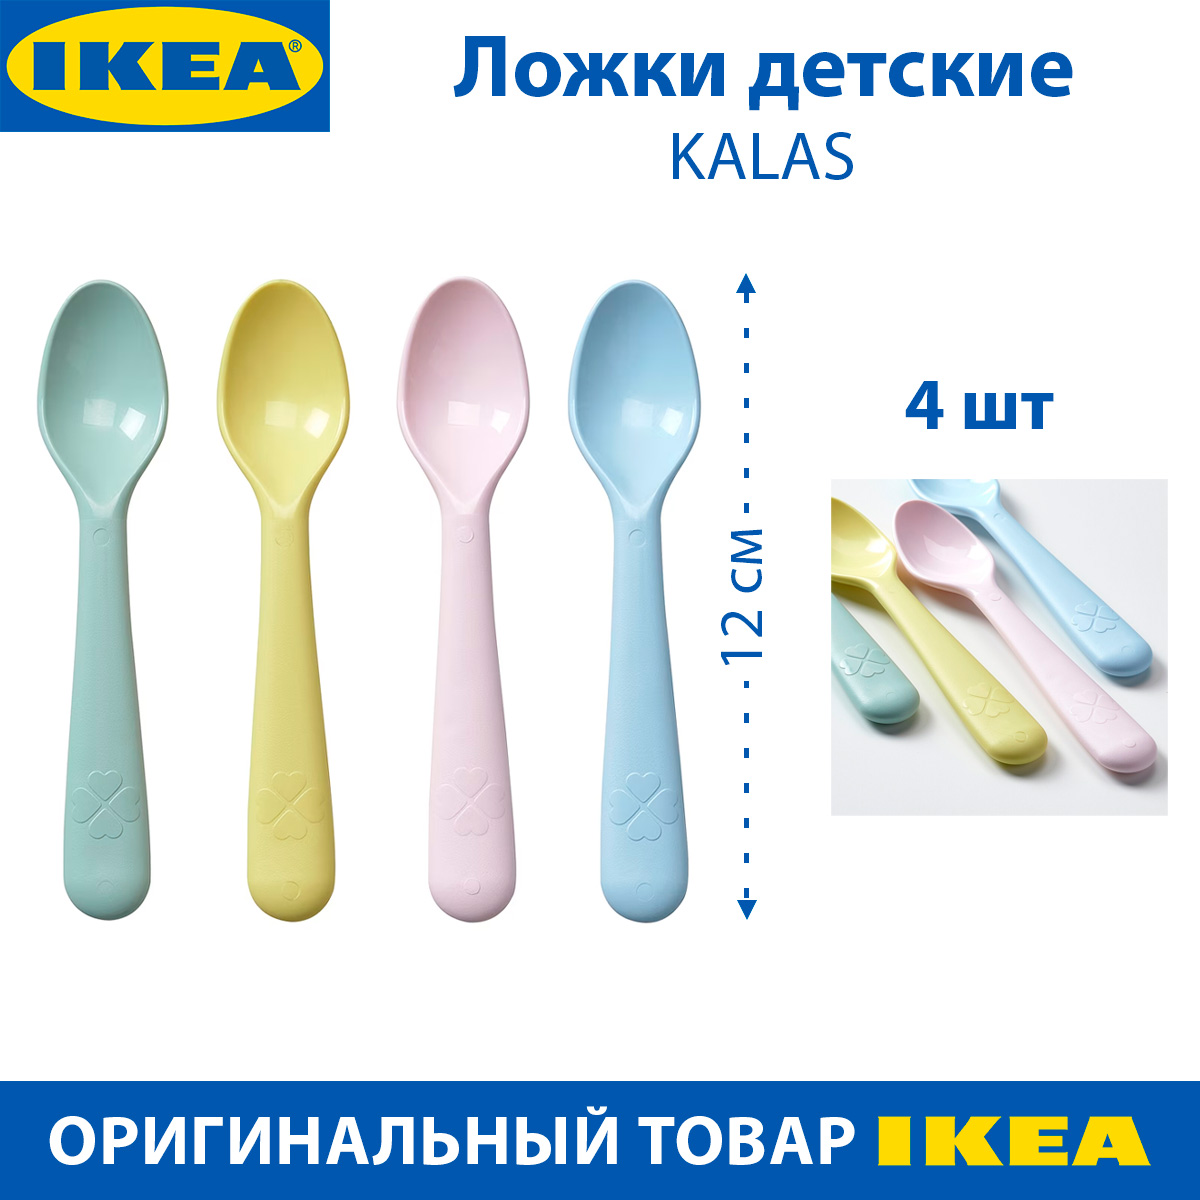 Ложки детские IKEA KALAS КАЛАС, разноцветные, пластиковые, 4 шт в наборе детские кольца в наборе